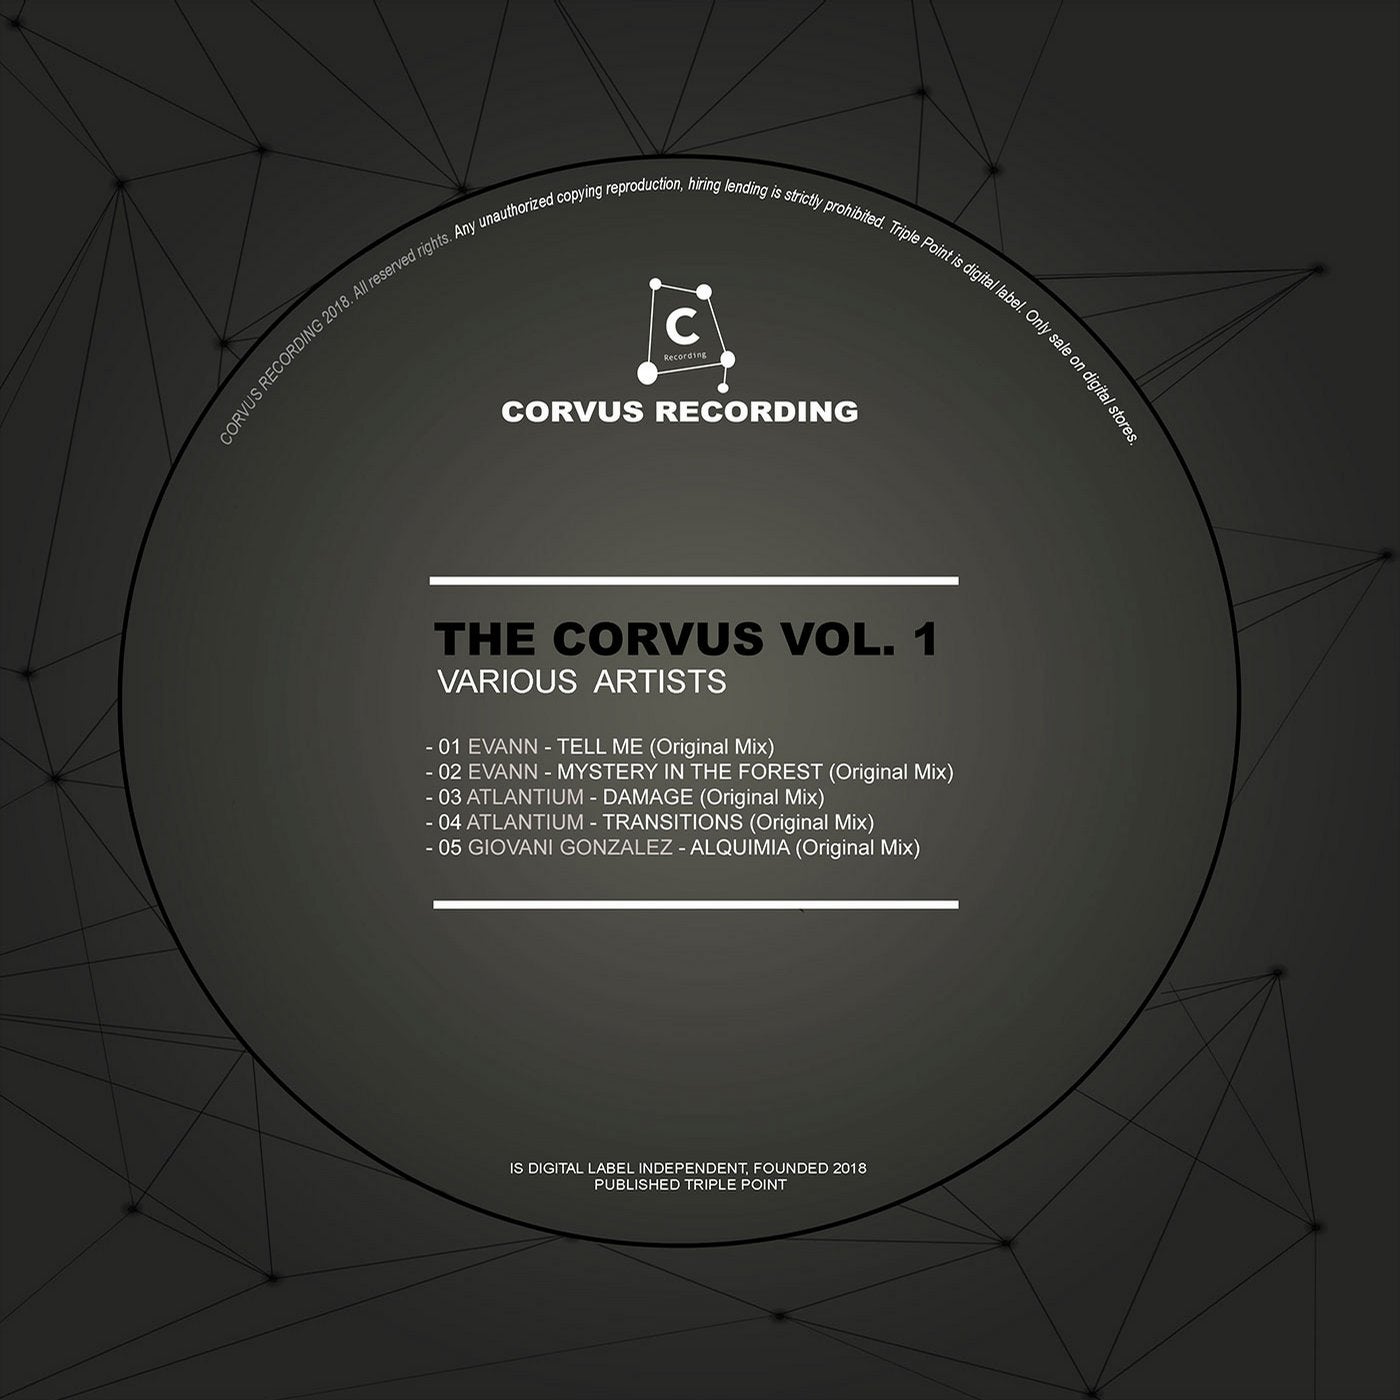 The Corvus Vol. 1